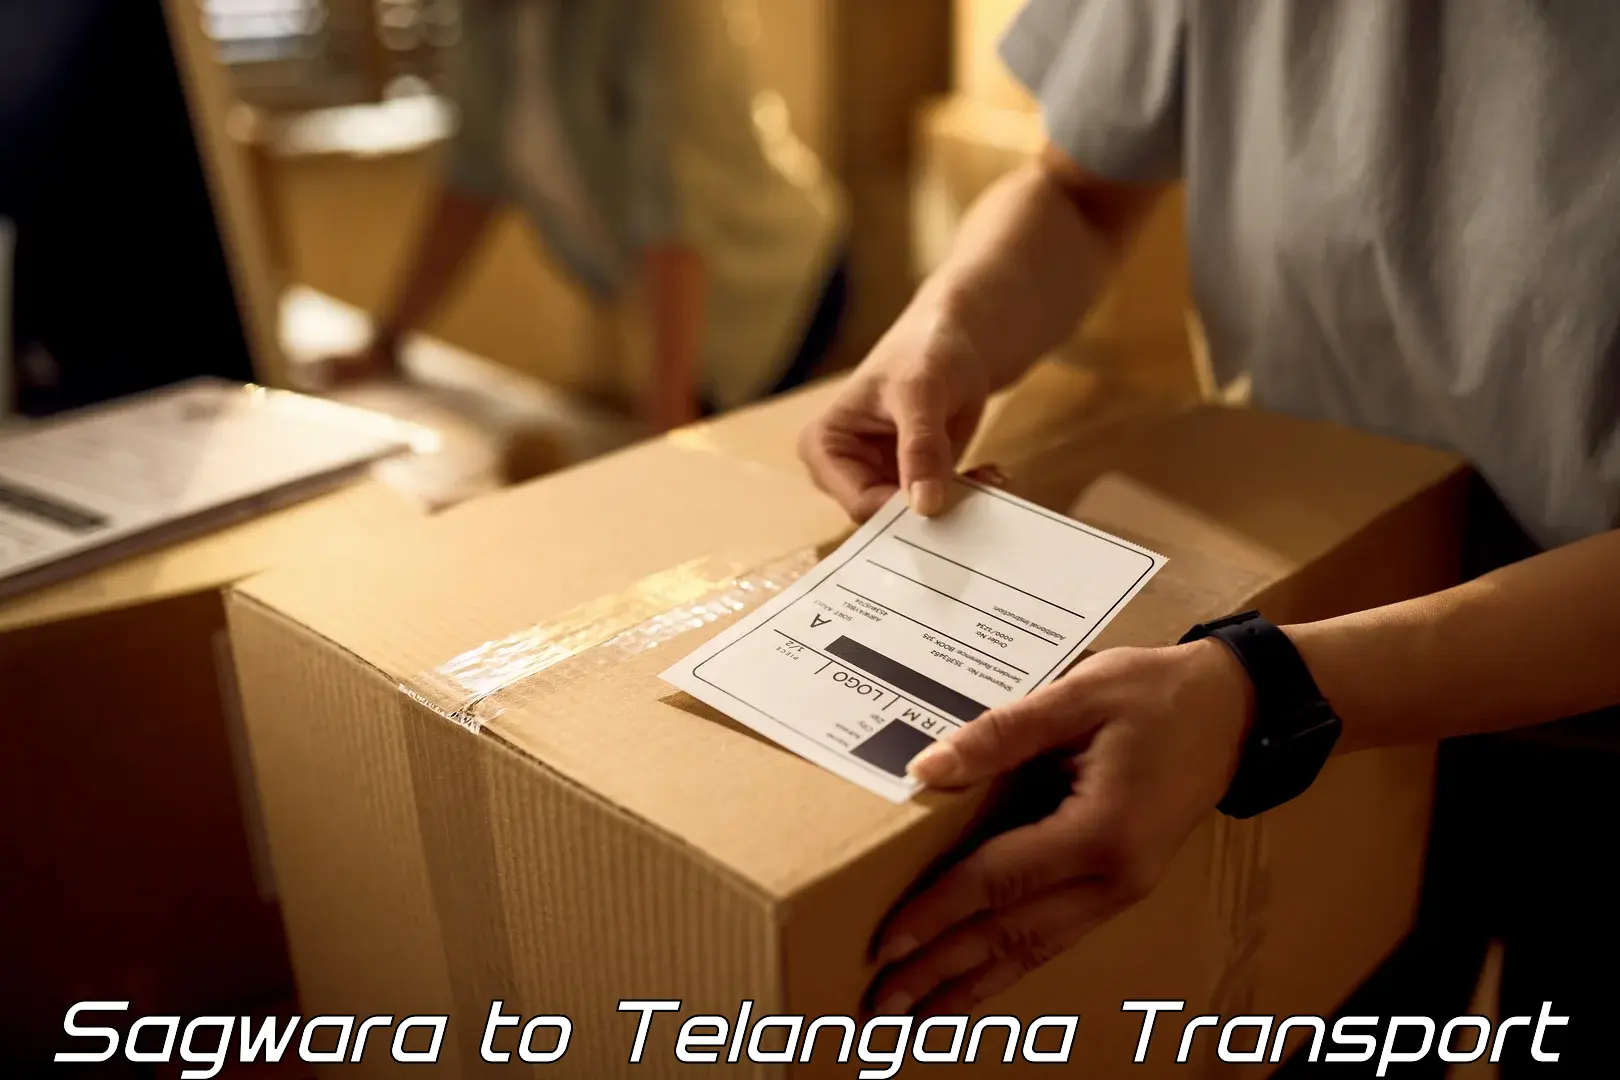 Pick up transport service Sagwara to Telangana